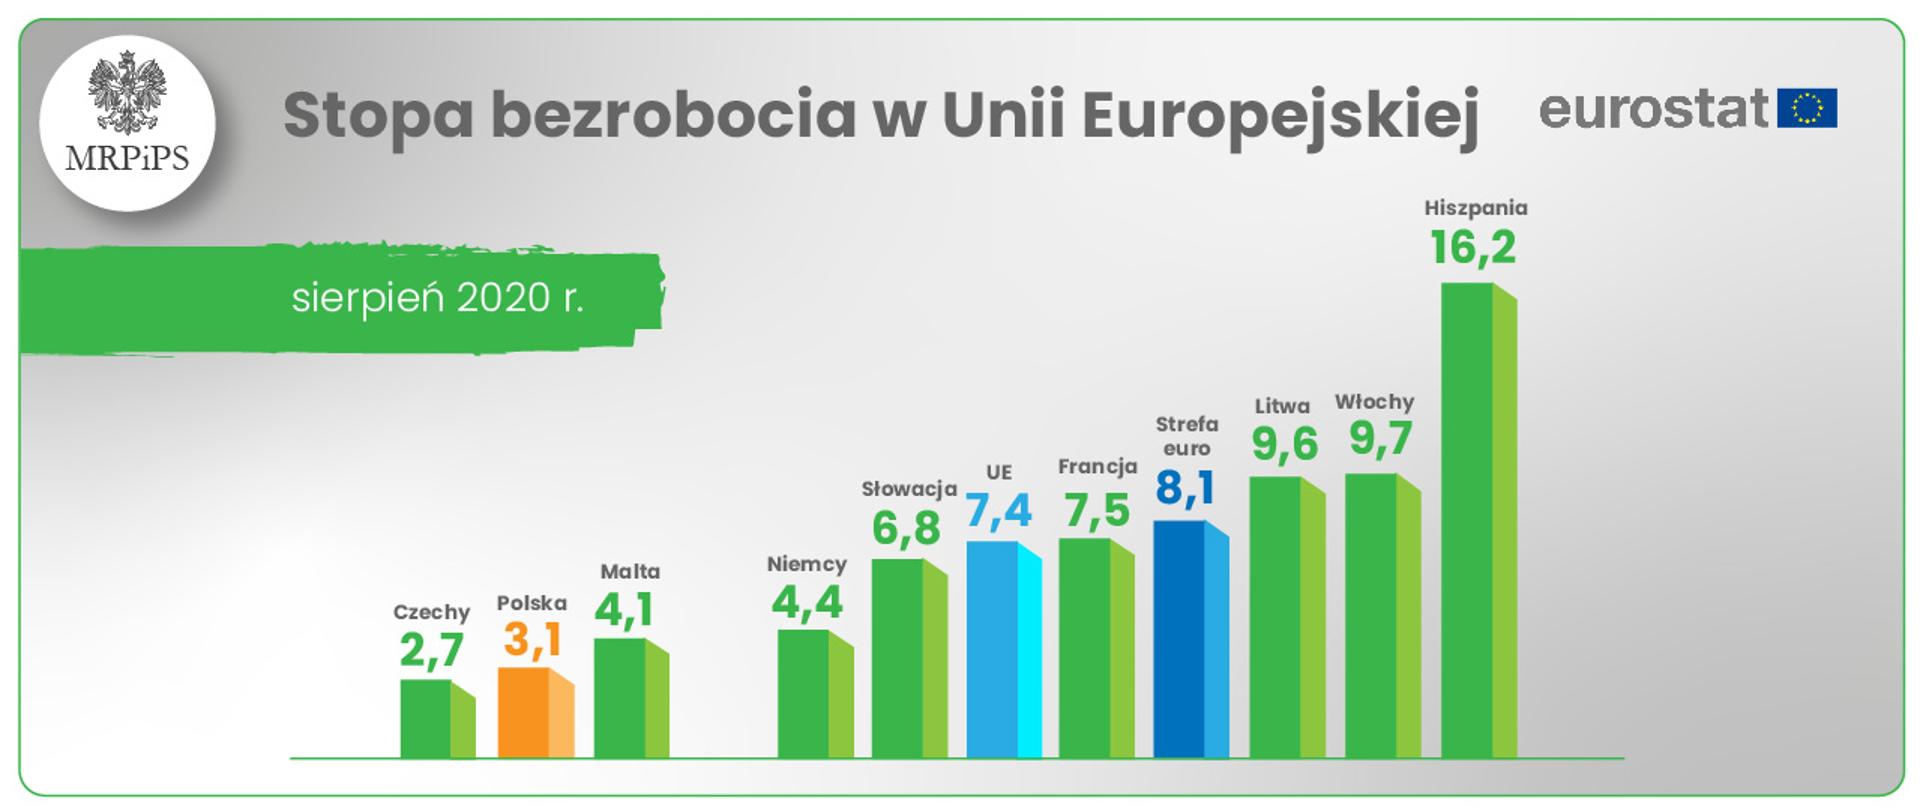 Wykres słupkowy pokazujący wysokość stopy bezrobocia w UE wg Eurostatu w miesiącu sierpniu 2020. Najniższe bezrobocie Czechy 2,7 , kolejne miejsce zajmuje Polska z wynikiem 3,1 proc. Najwyższa stopa bezrobocia 16,2 proc została zanotowana w Hiszpanii